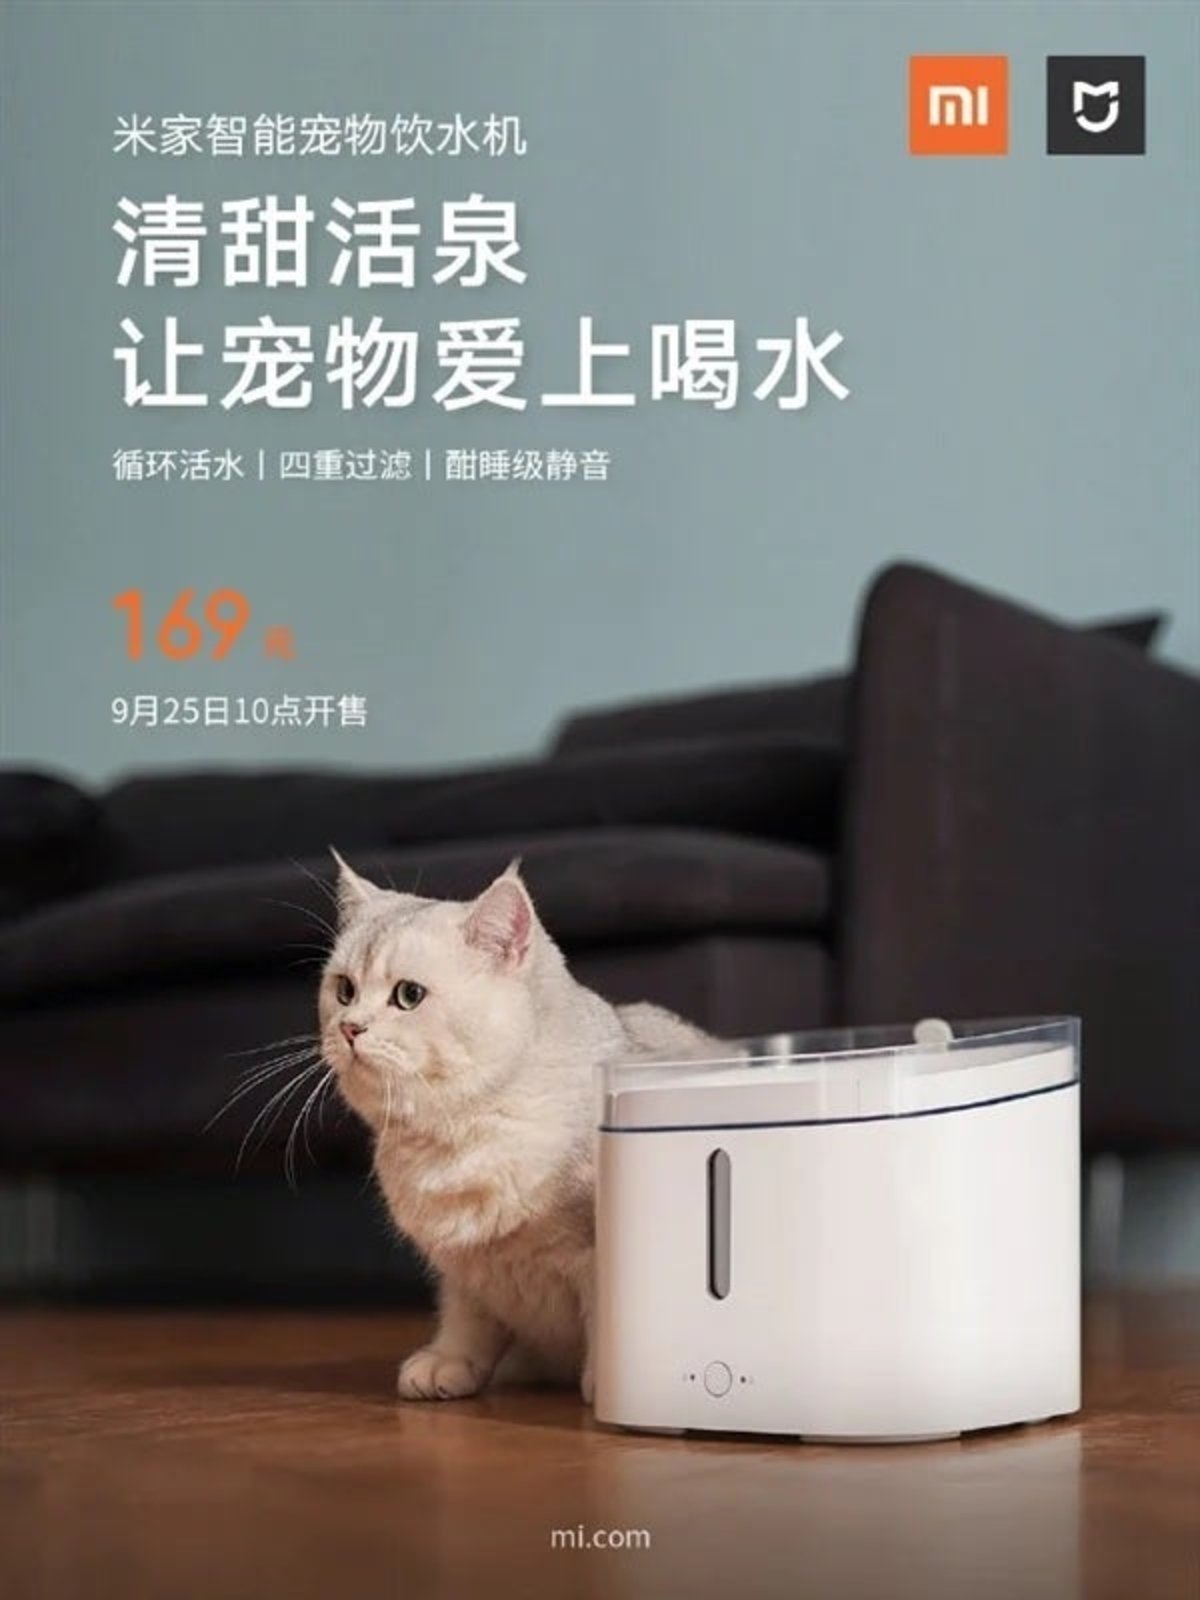 Mijia Smart Pet Water Dispenser, el alimentador de mascotas de Xiaomi